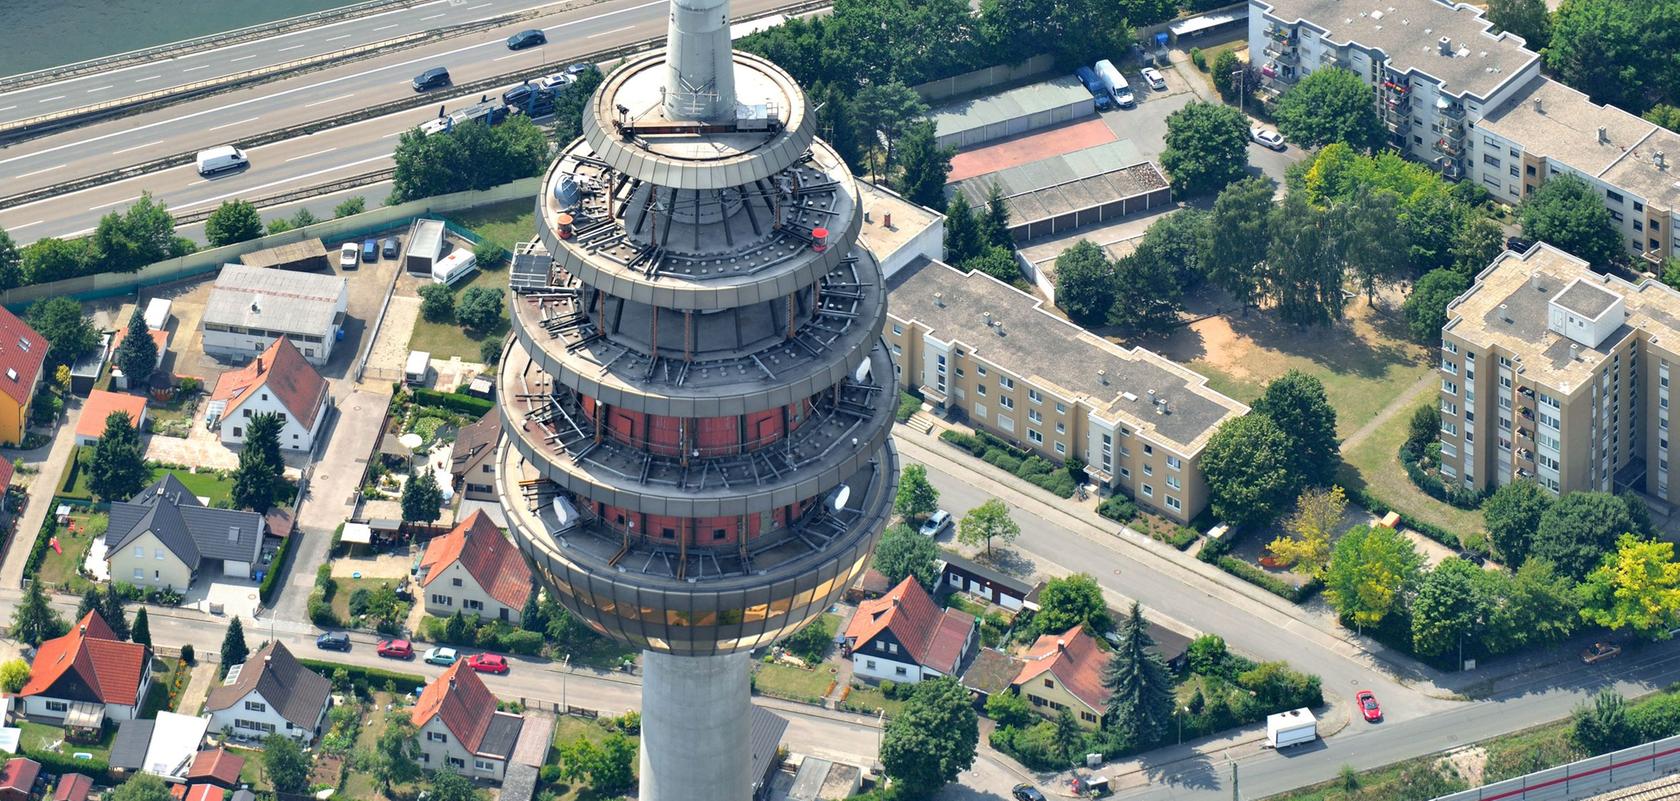 Der Blick vom Fernmeldeturm - in den letzten Monaten gab es für Interessierte immer wieder die Möglichkeit das Nürnberger "Ei" zu erklimmen. Doch jetzt ist erst einmal Schluss damit.